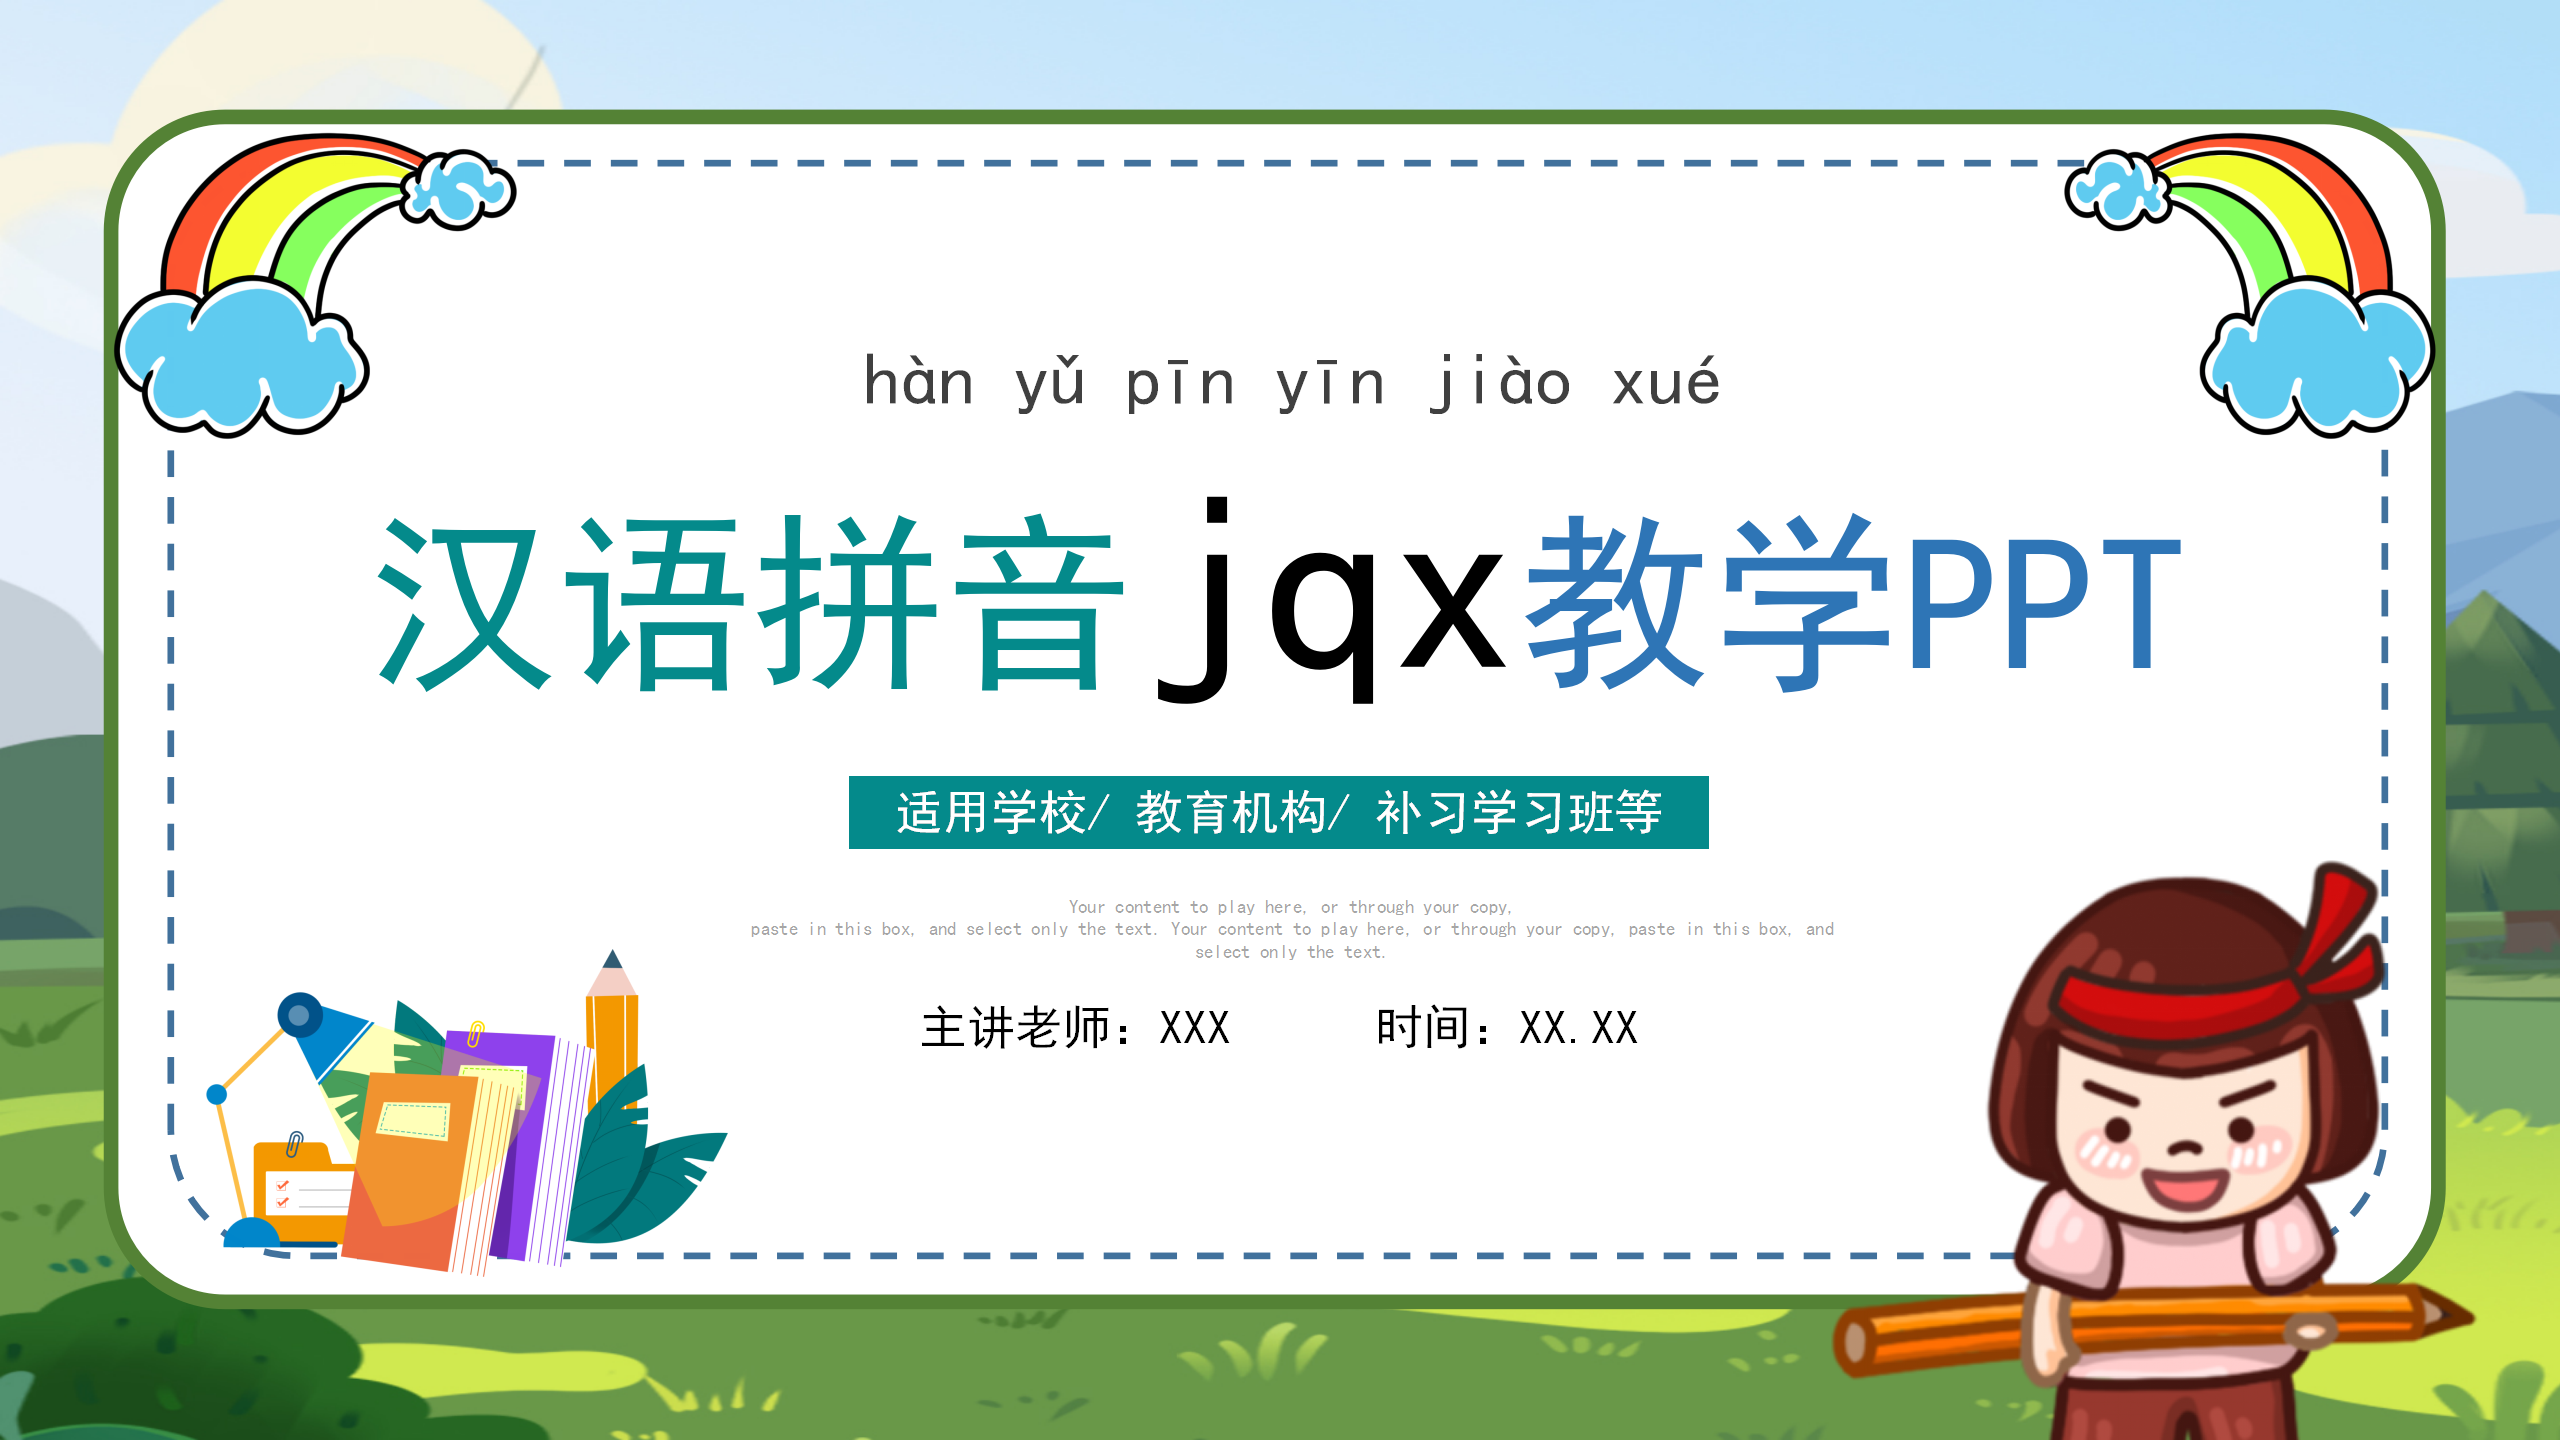 小学语文拼音《jqx》ppt课件模板PPT课件下载